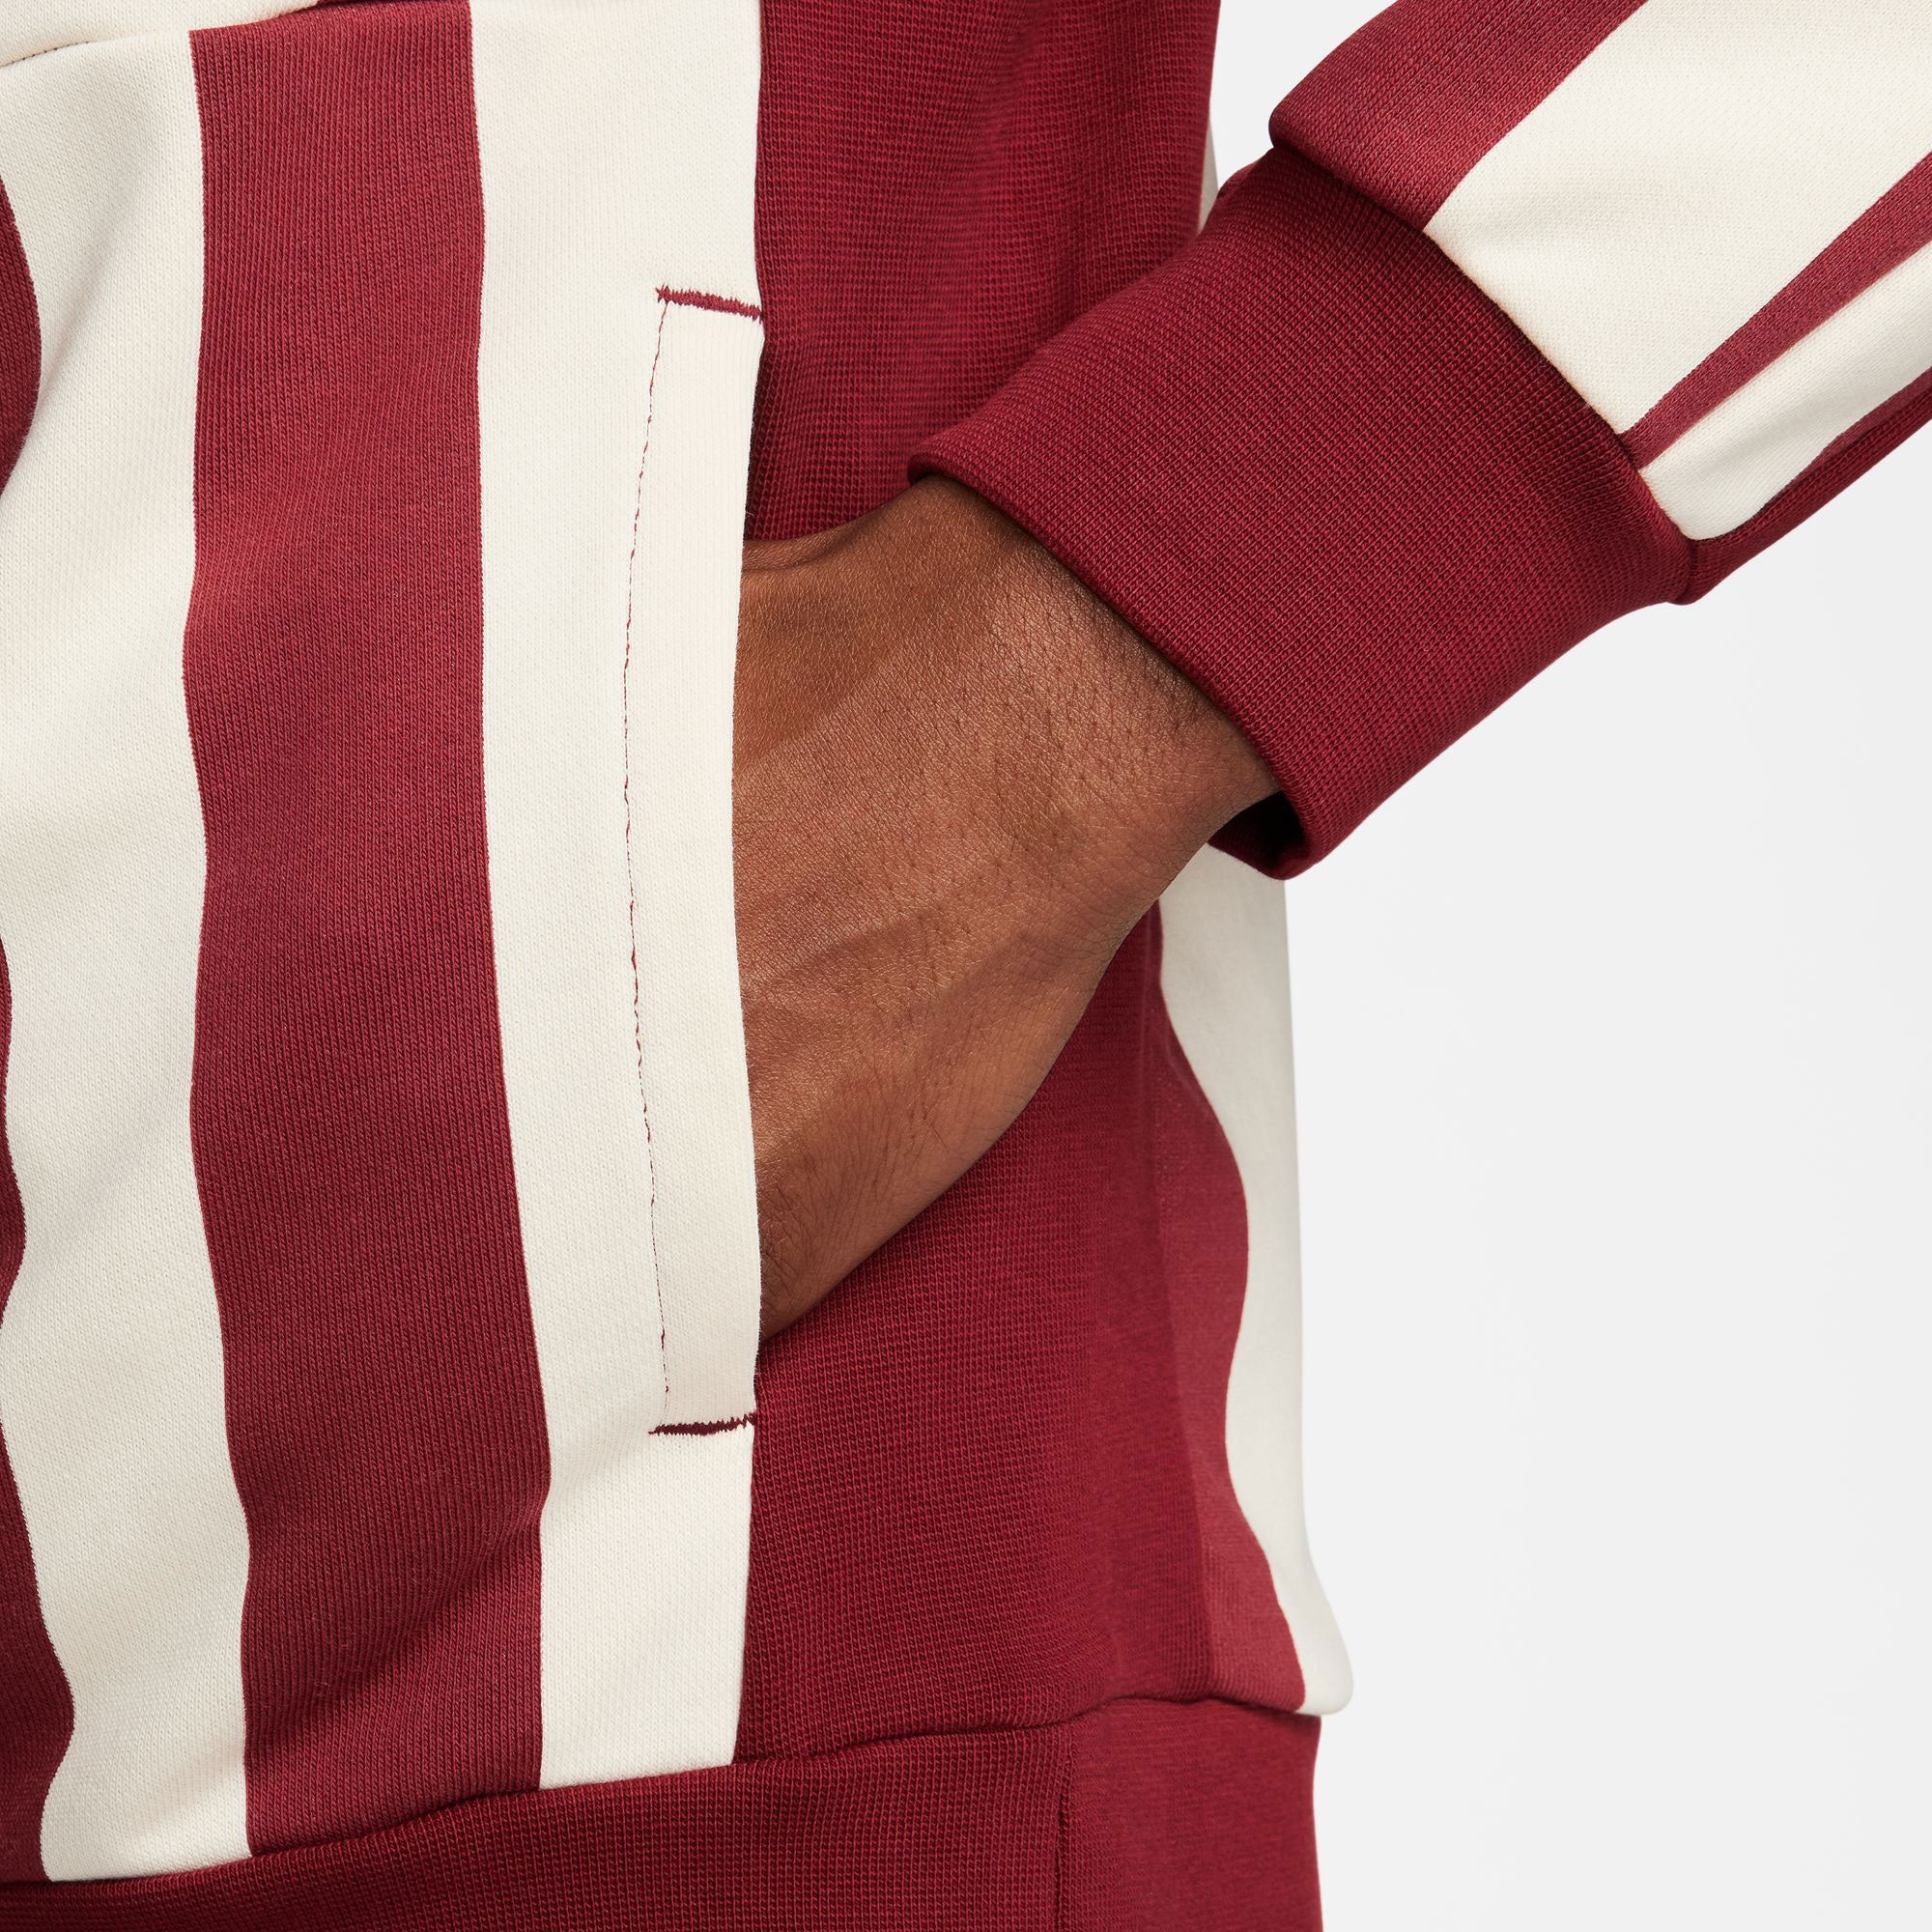 NikeCourt Heritage Men's Dri-FIT Fleece Printed Tennis Hoodie - Red (4)